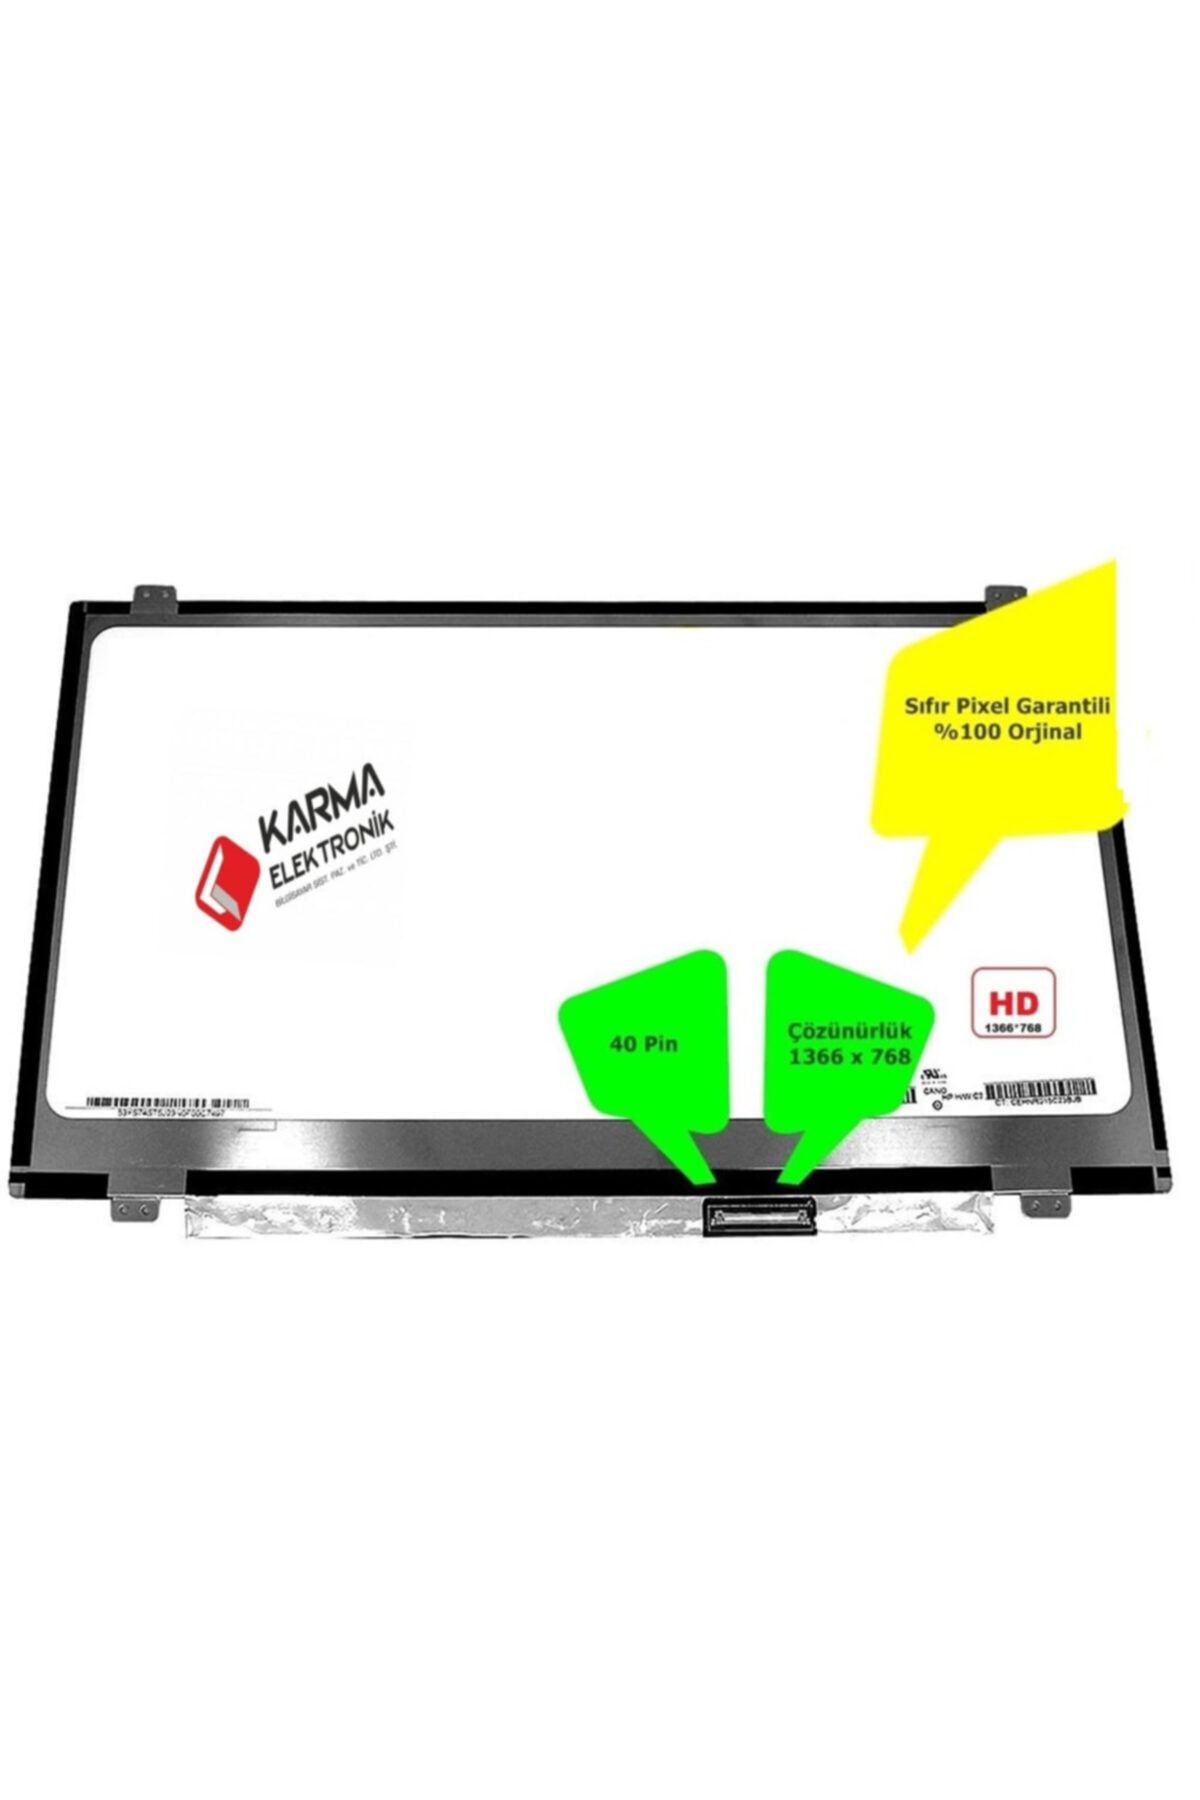 Dell Fujitsu Siemens Lıfebook Ah564 Uyumlu Notebook Slim Led/lcd Panel - Laptop Ekranı